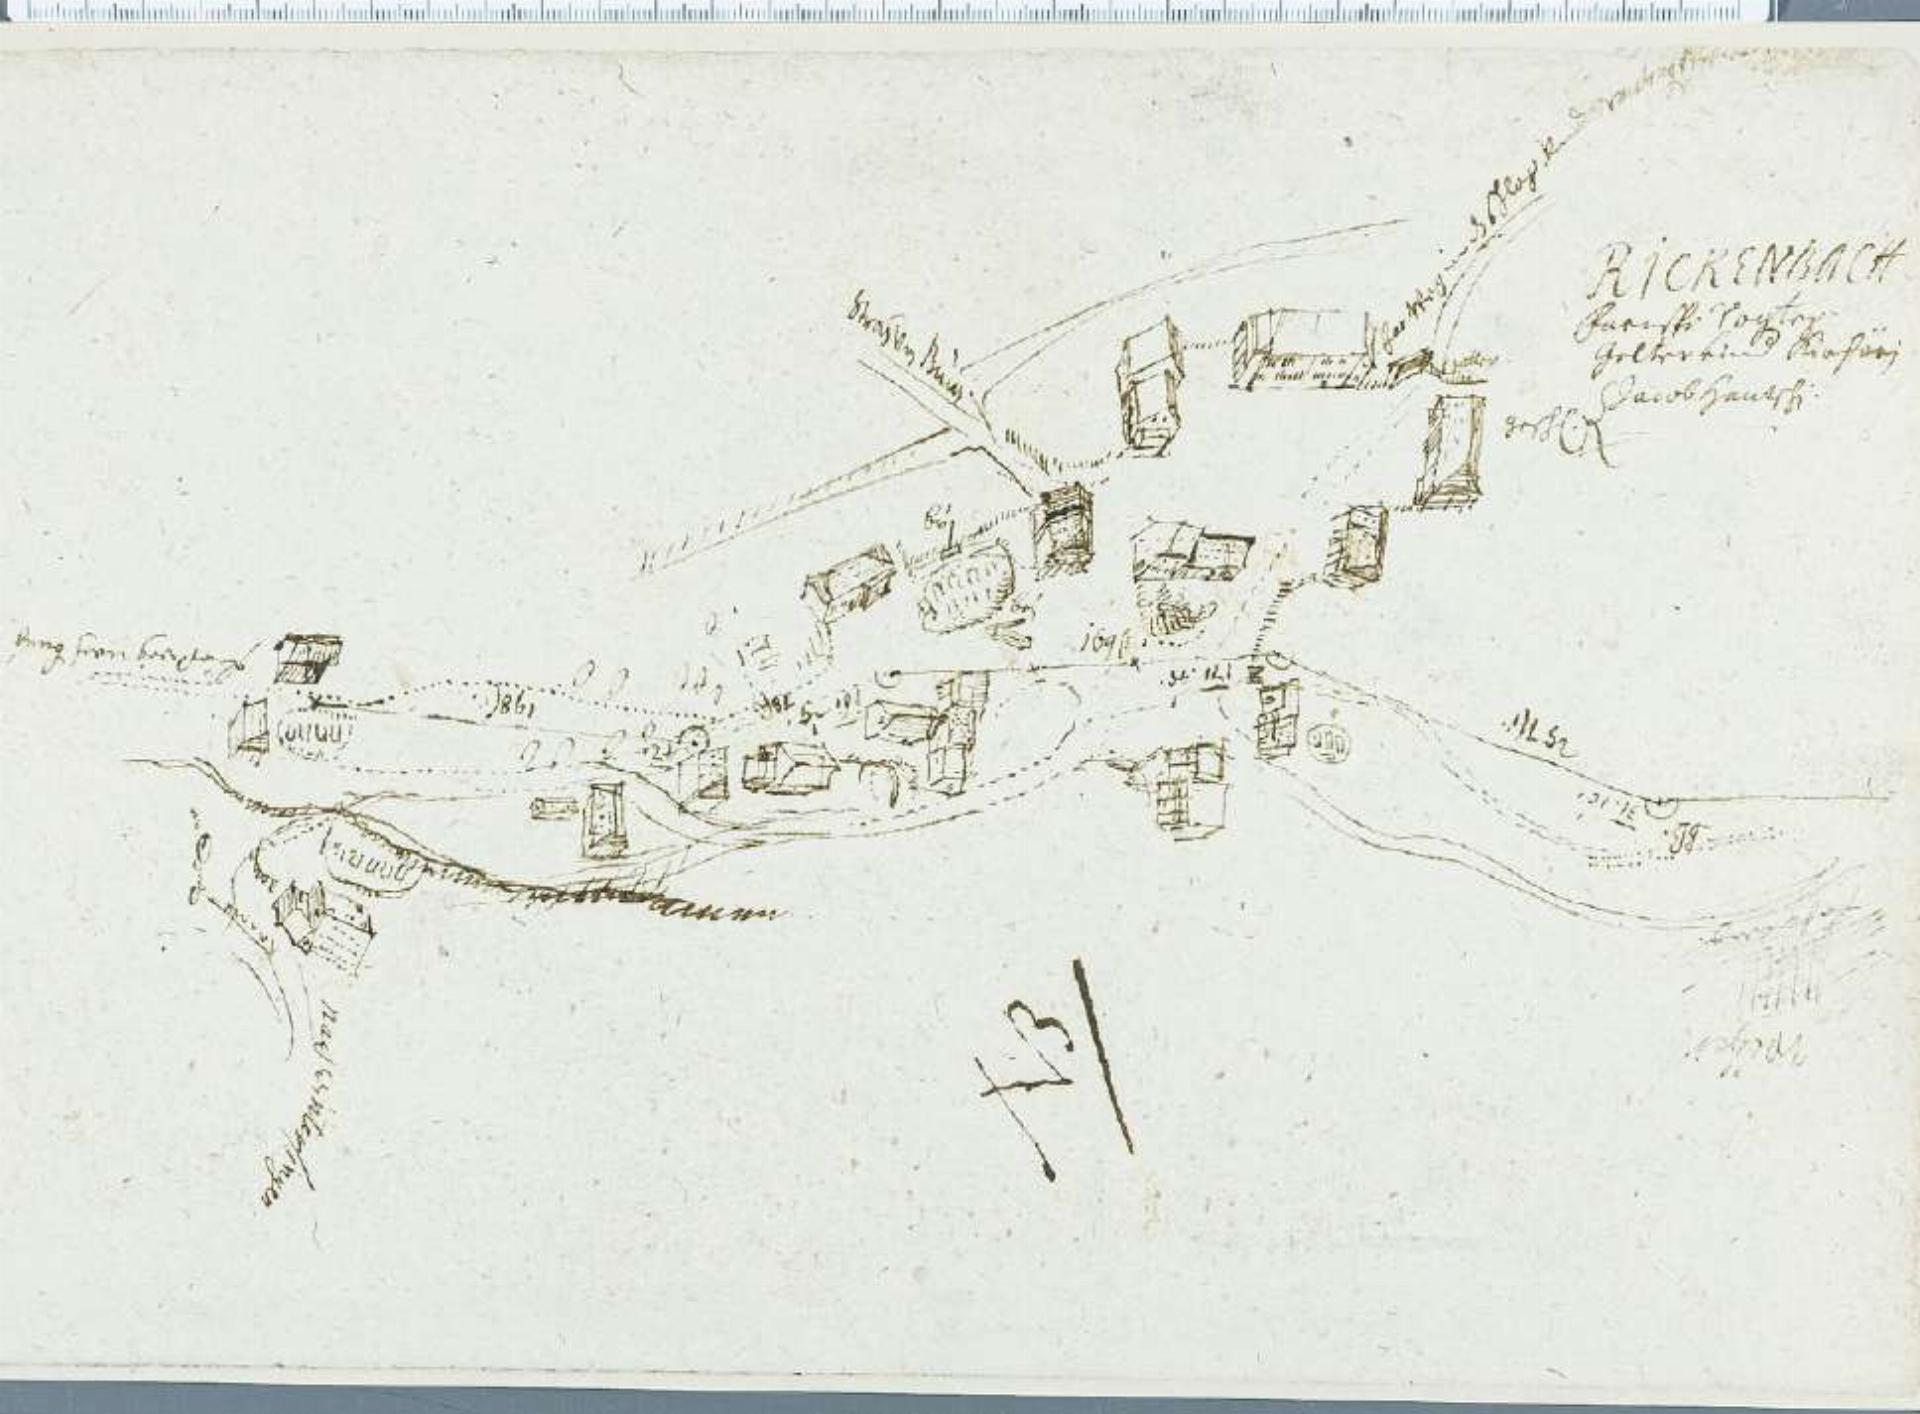 Der Ortsplan Rickenbachs von 1681 aus der Feder des Kartografen Georg Friedrich Meyer. Kartenausschnitt zvg